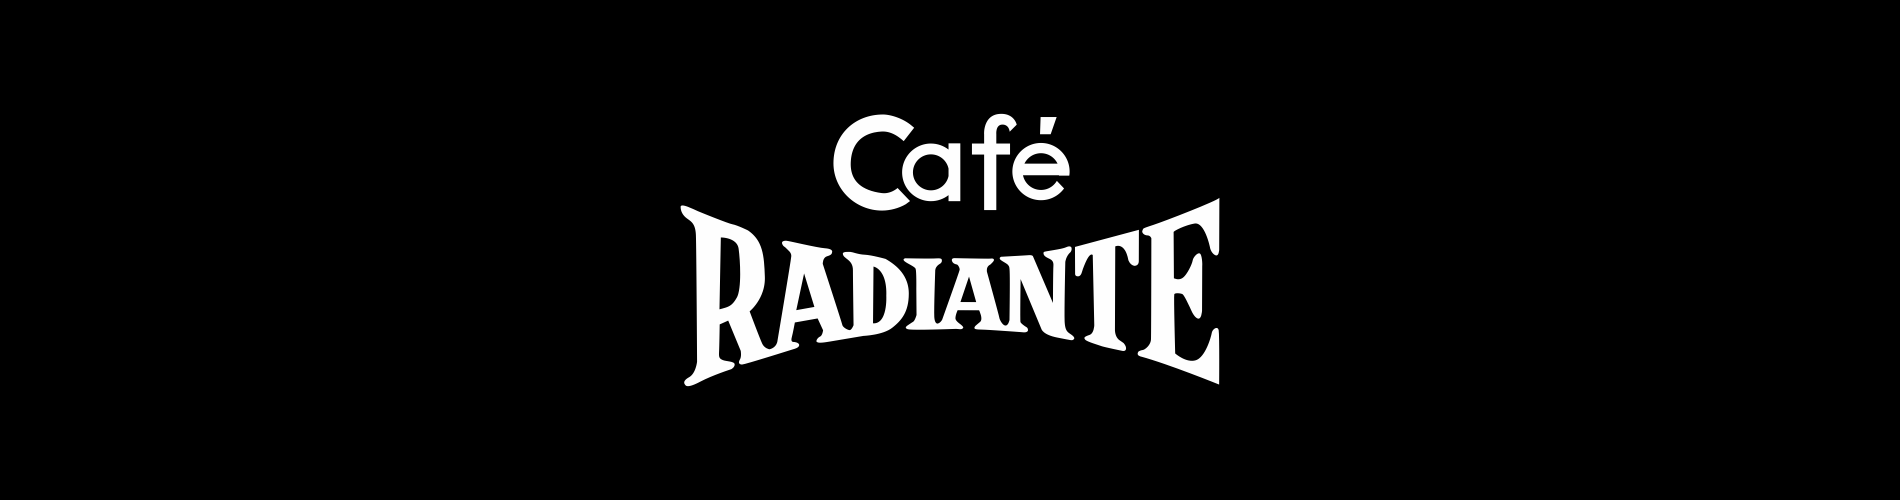 Café Radiante